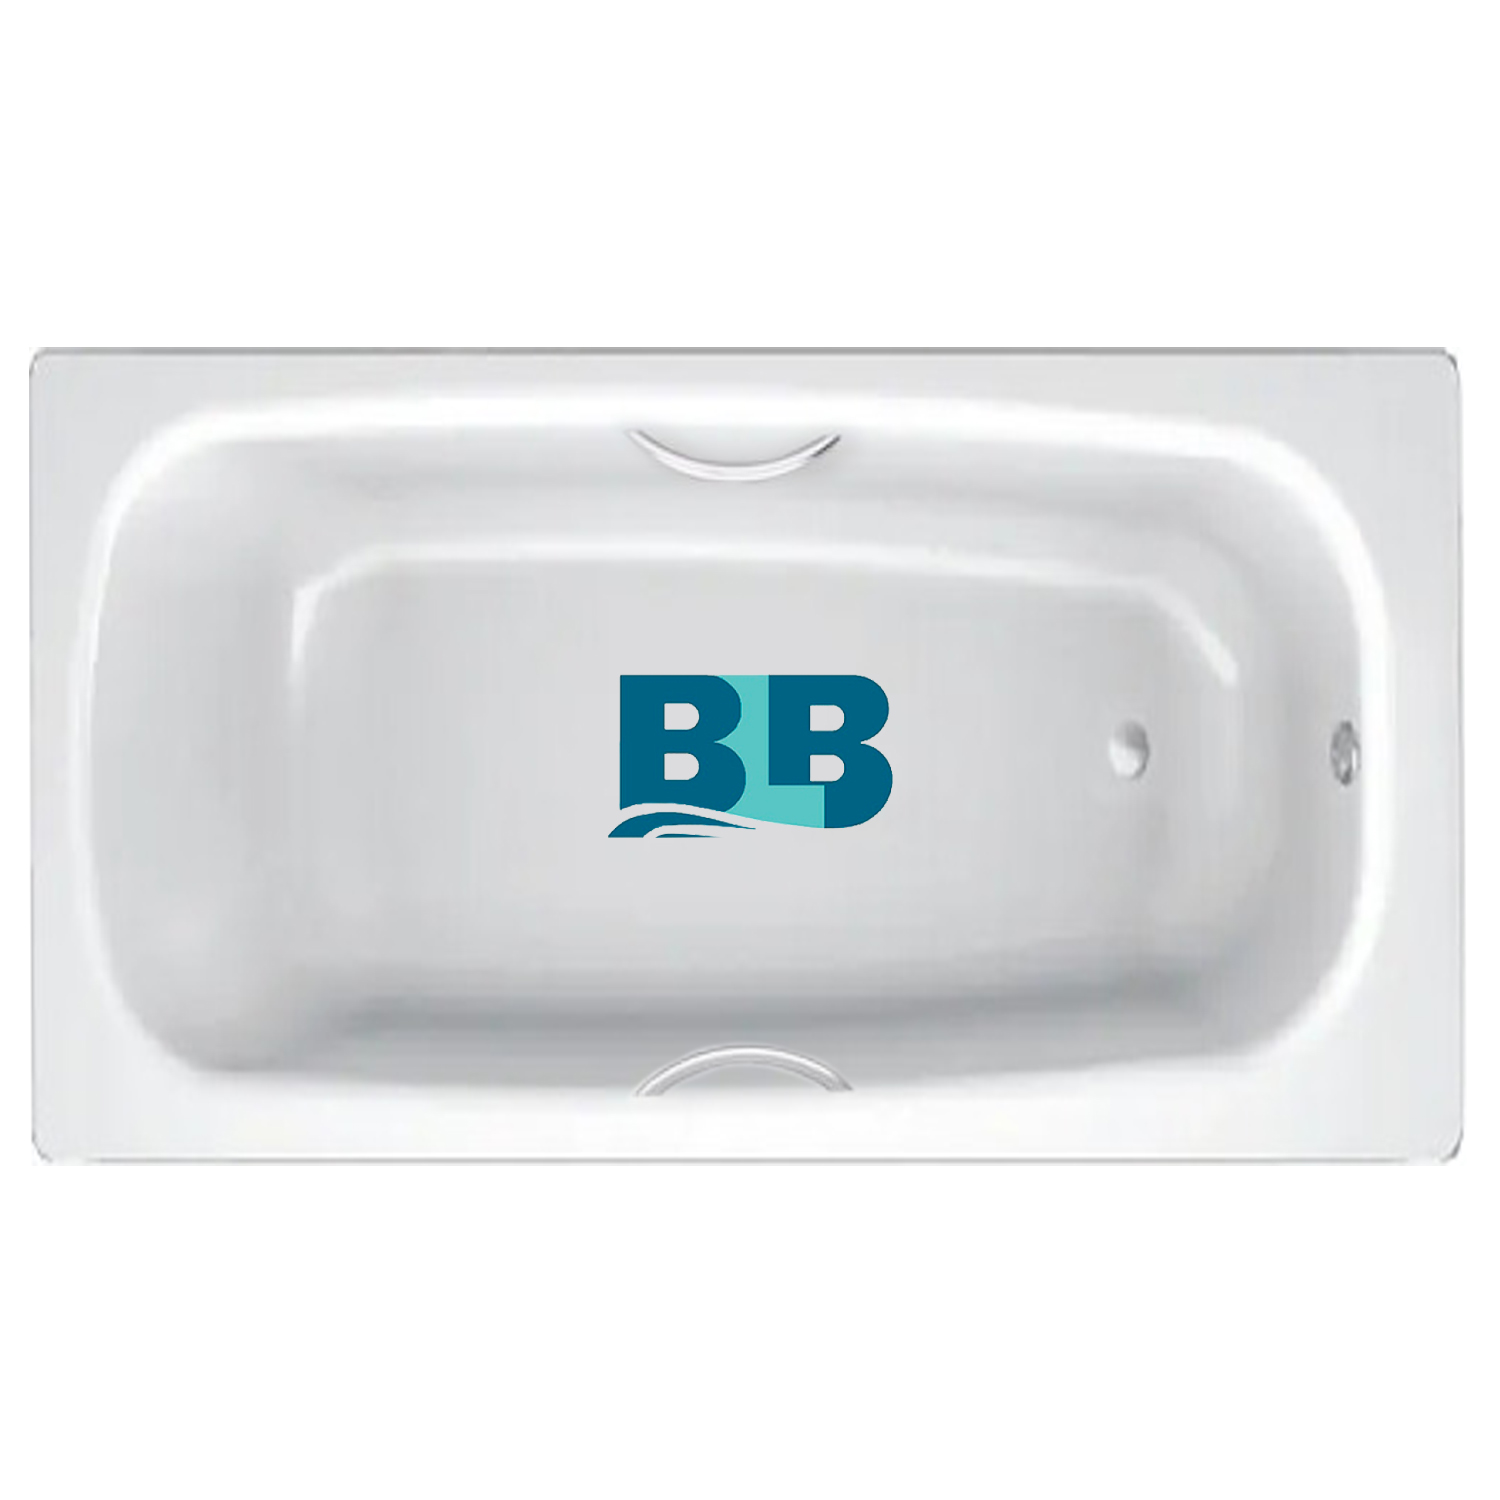 Стальная ванна blb hg. BLB apmstdbl1. Ванна стальная Universal HG BLB, С отверстиями для ручек. Код: 211310 стальная ванна BLB Universal b70h 170x70 см, с ножками apmstdbl1. Ванна стальная с ручками 150х75 и выступами.